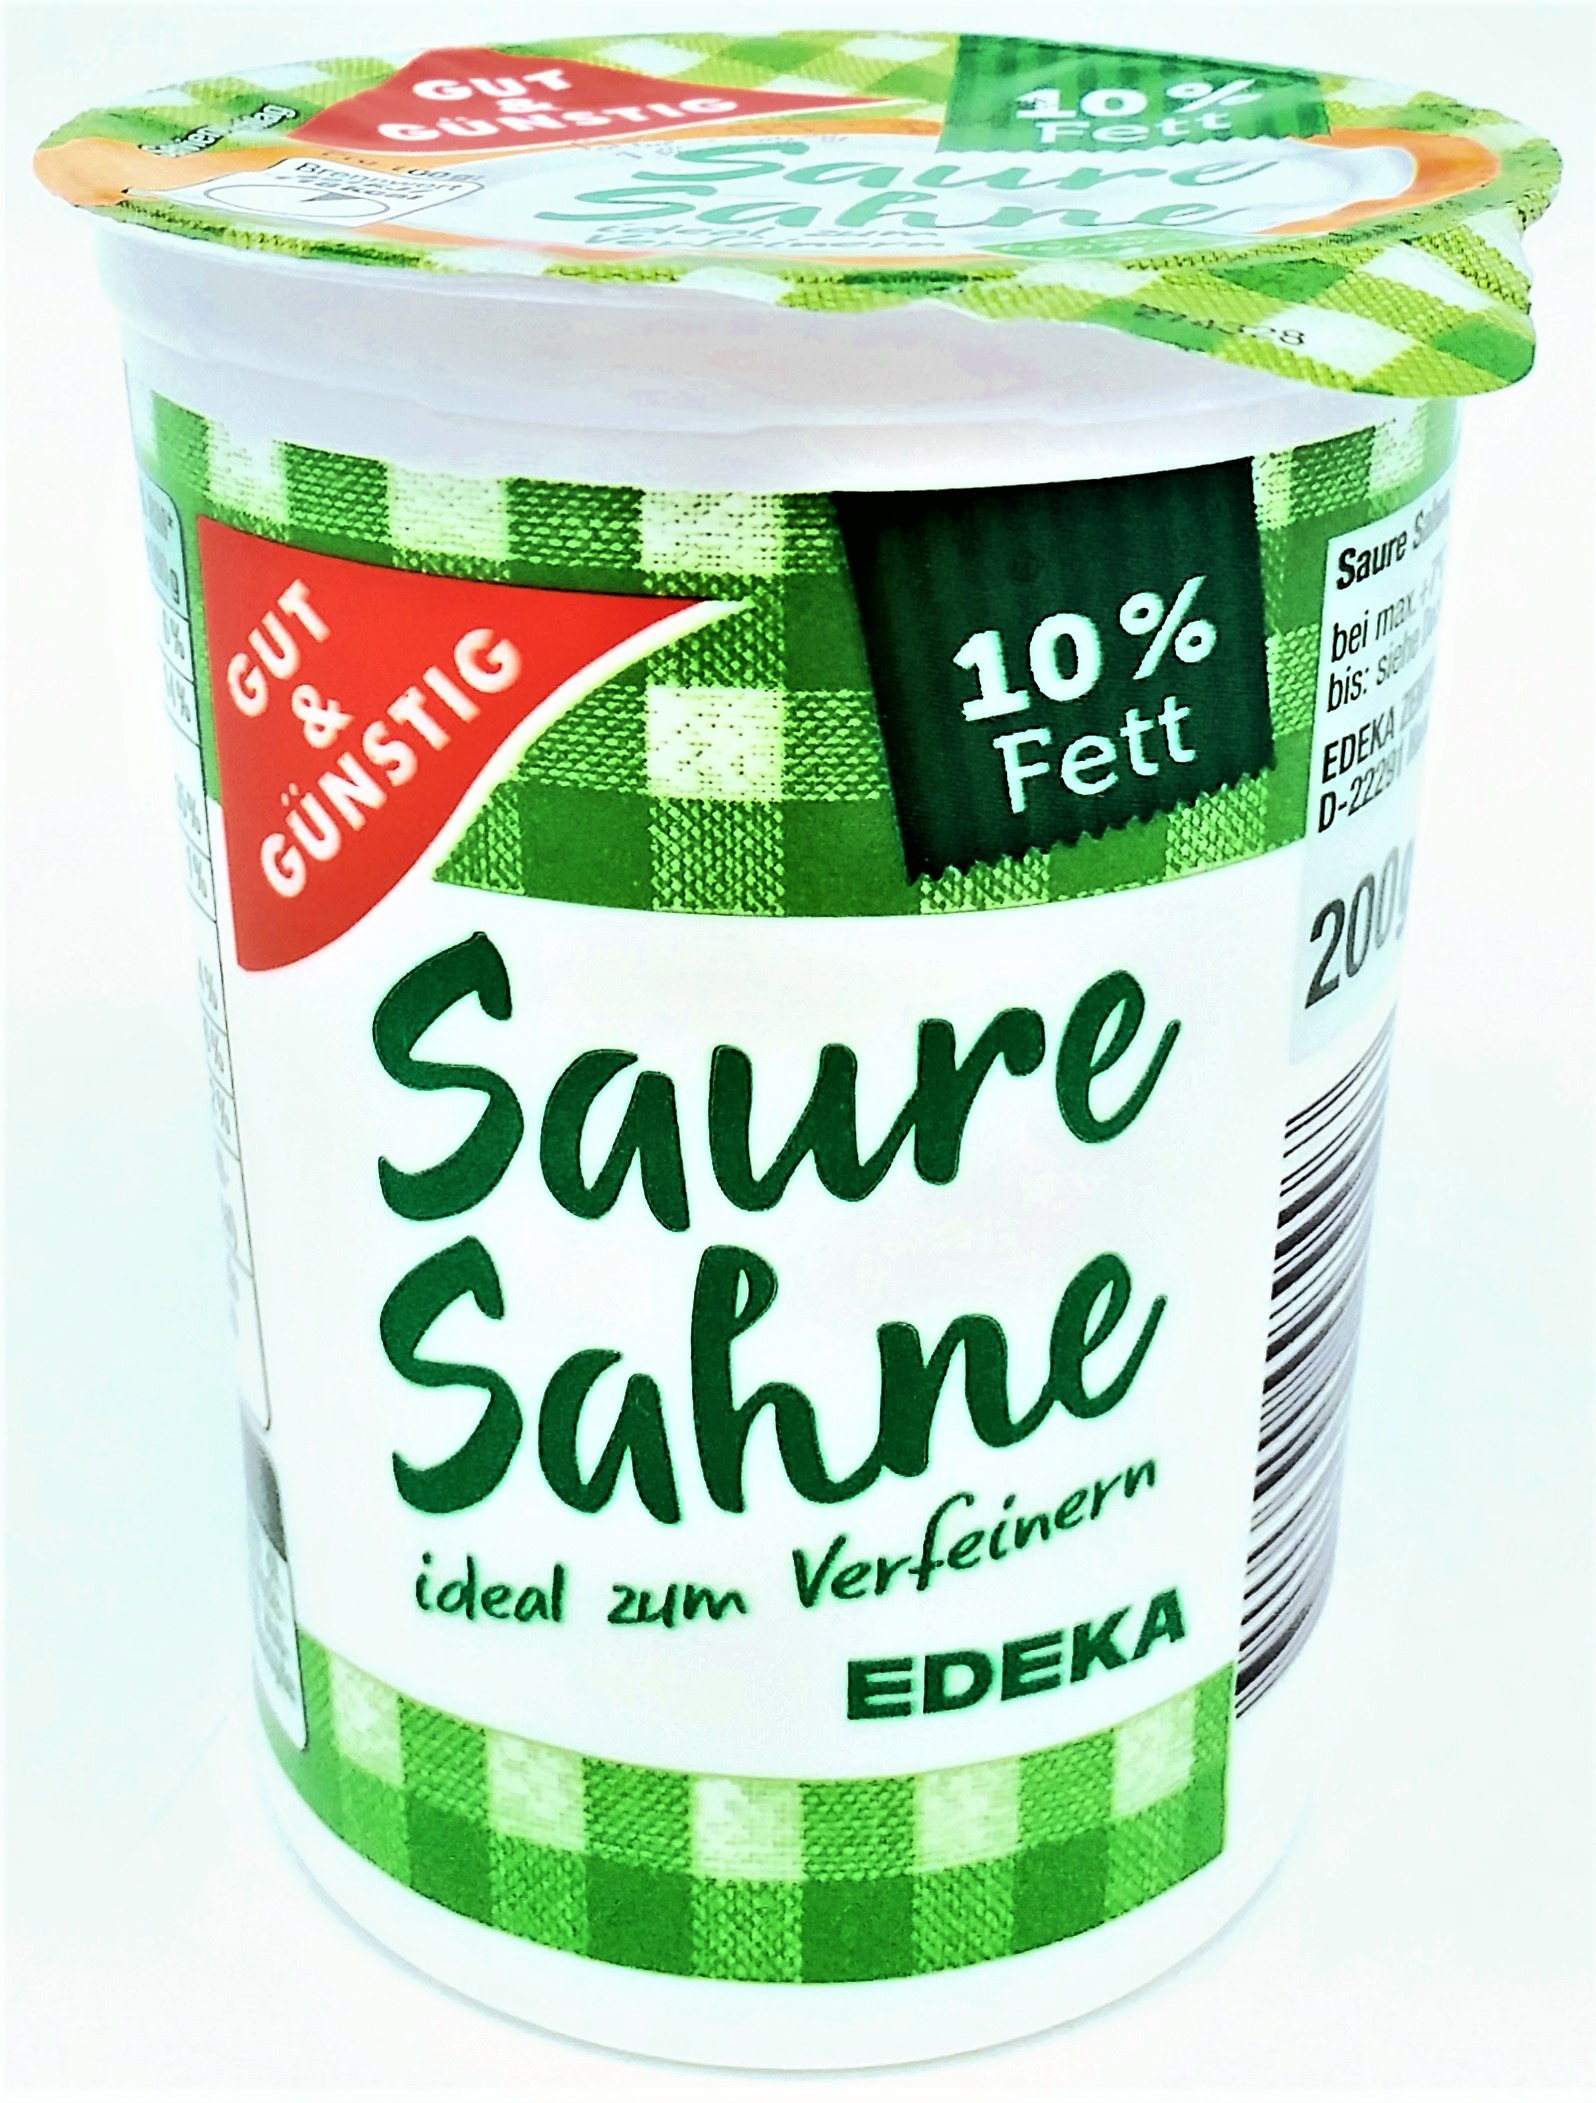 G&G Saure Sahne 10% Fett 200g